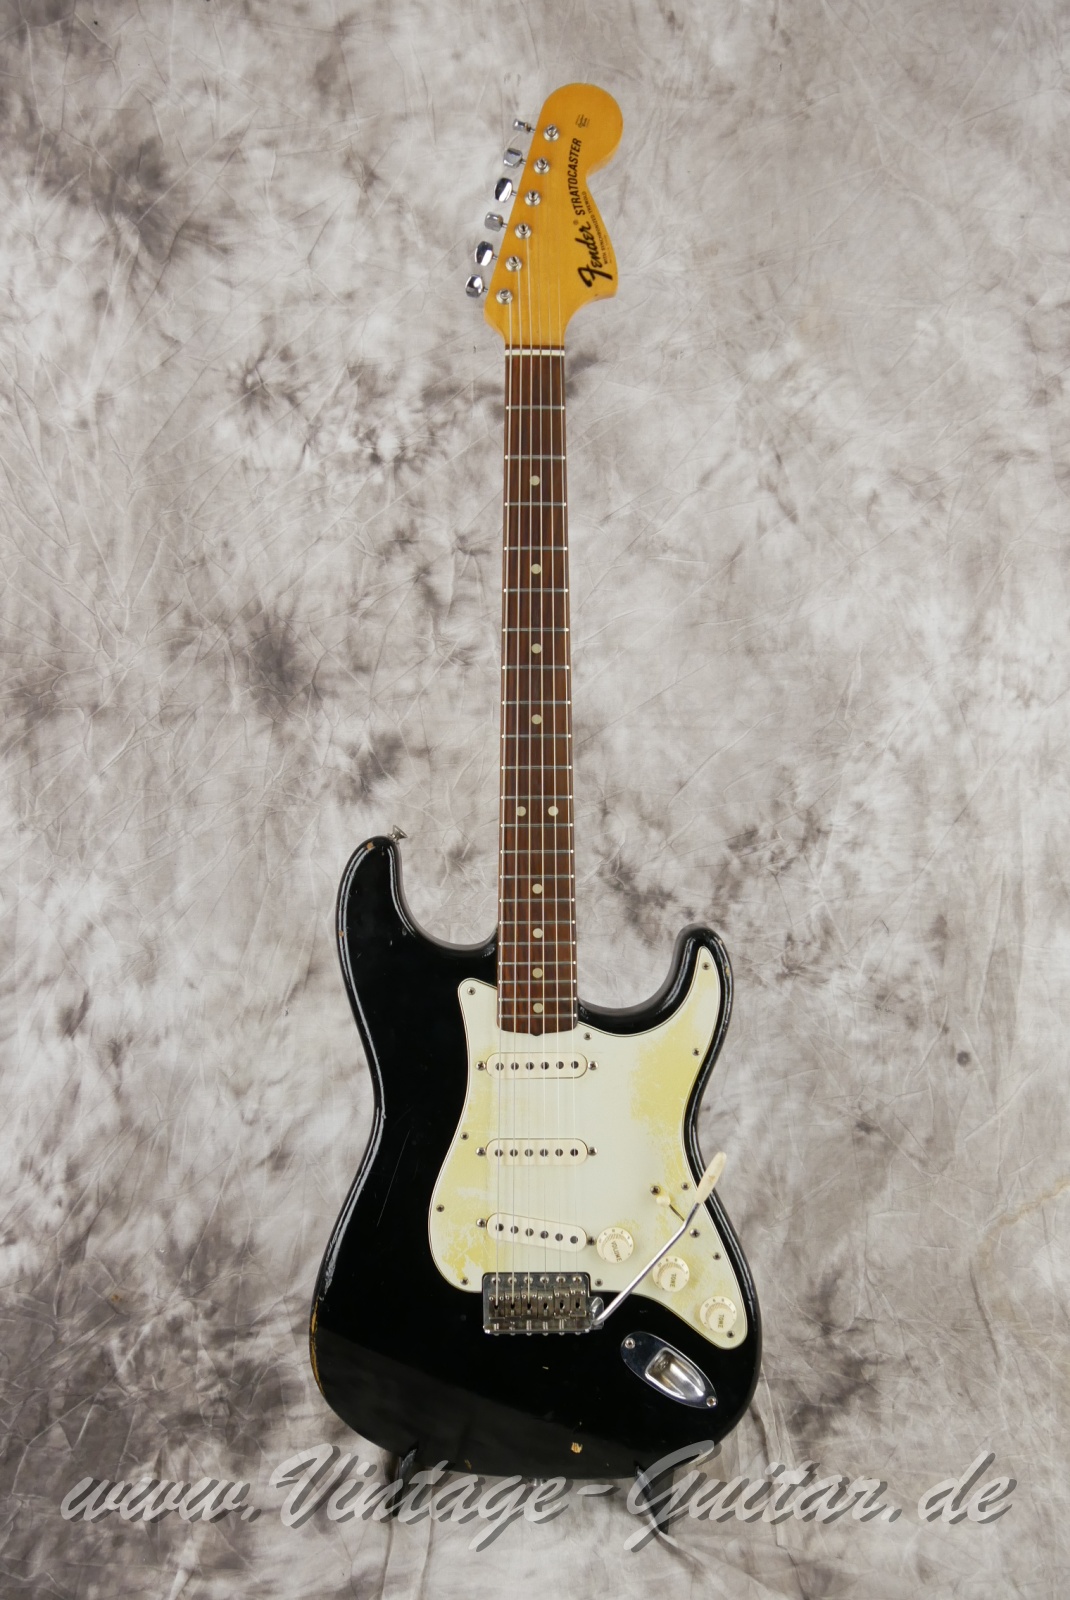 Fender-Stratocaster-1964-body-with-1969-neck-black-001.jpg